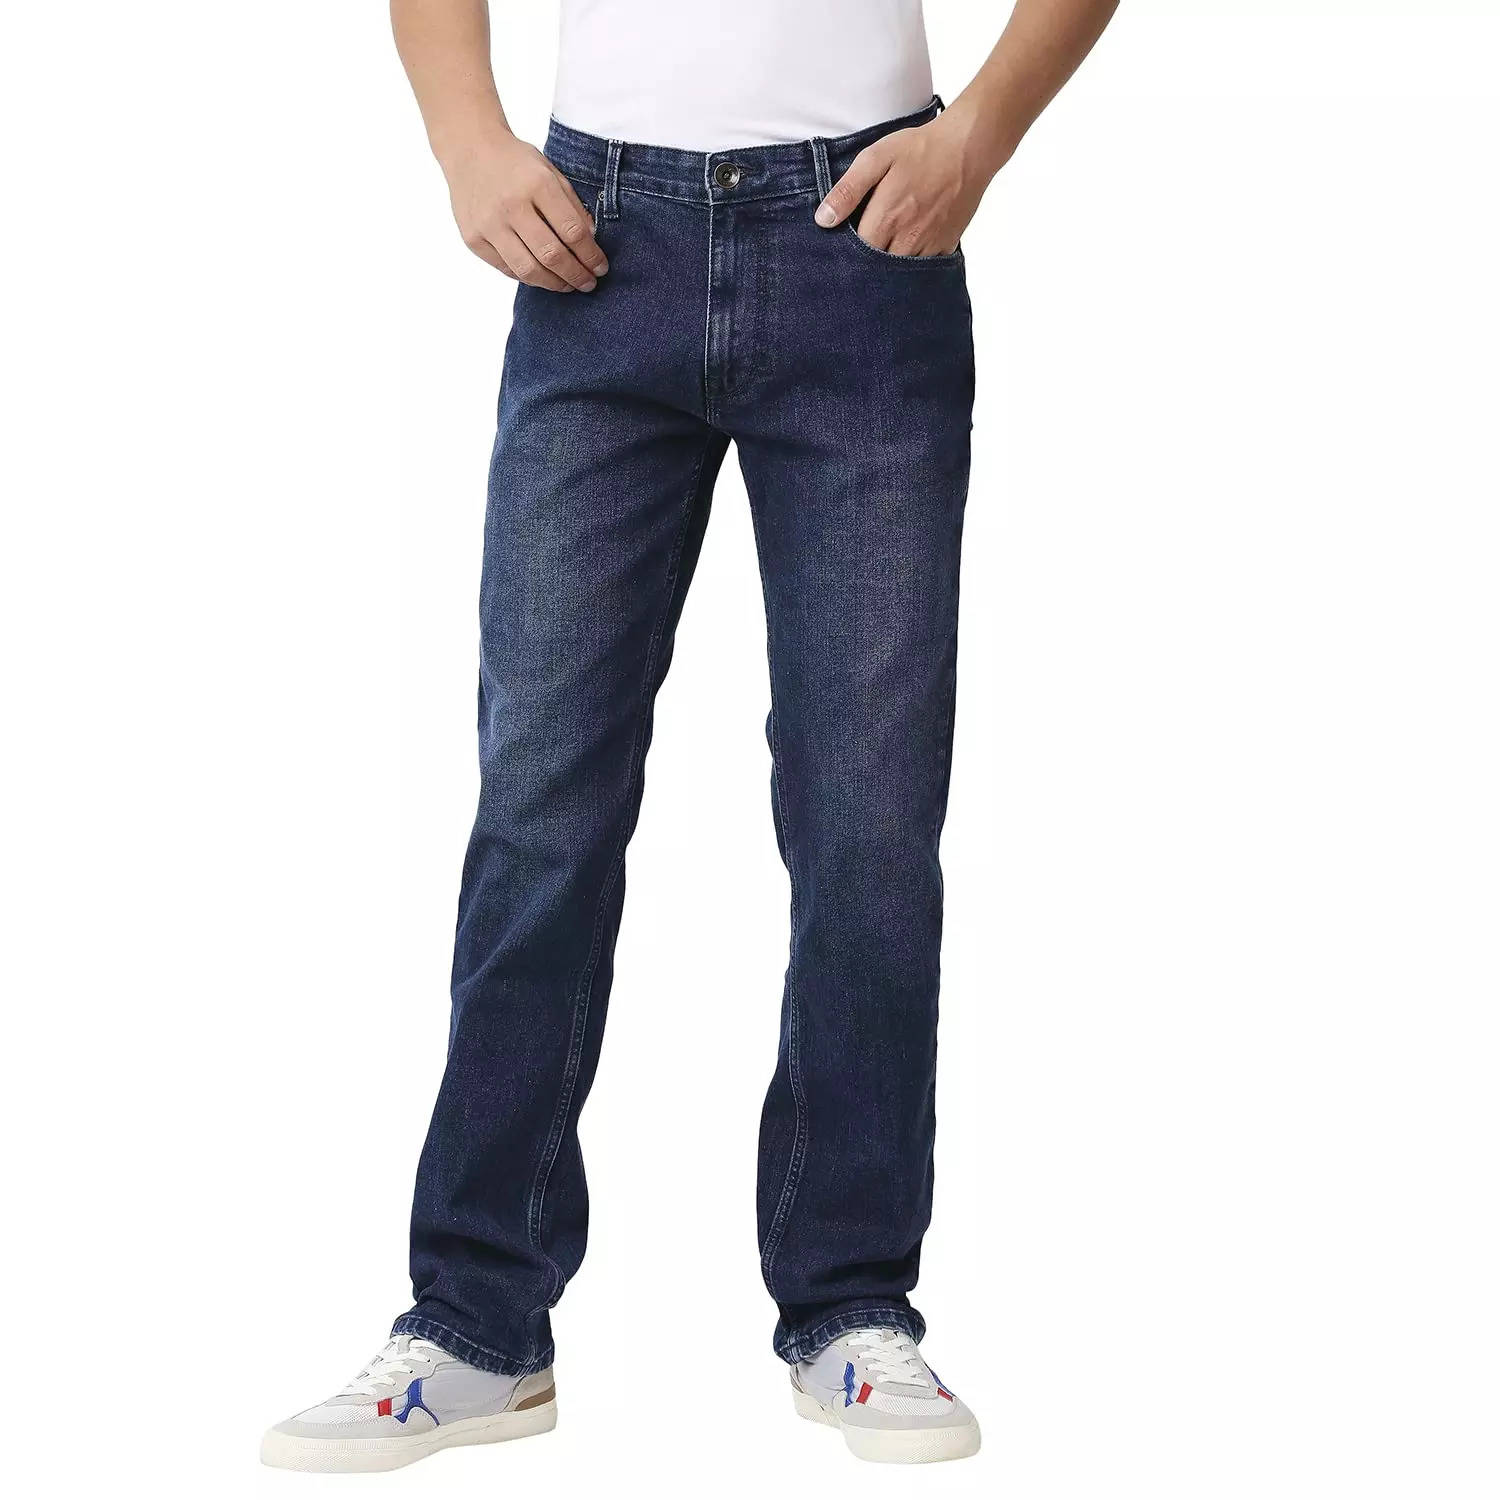 Buy Men's Aeropostale Plain Mid-Rise Trousers Online